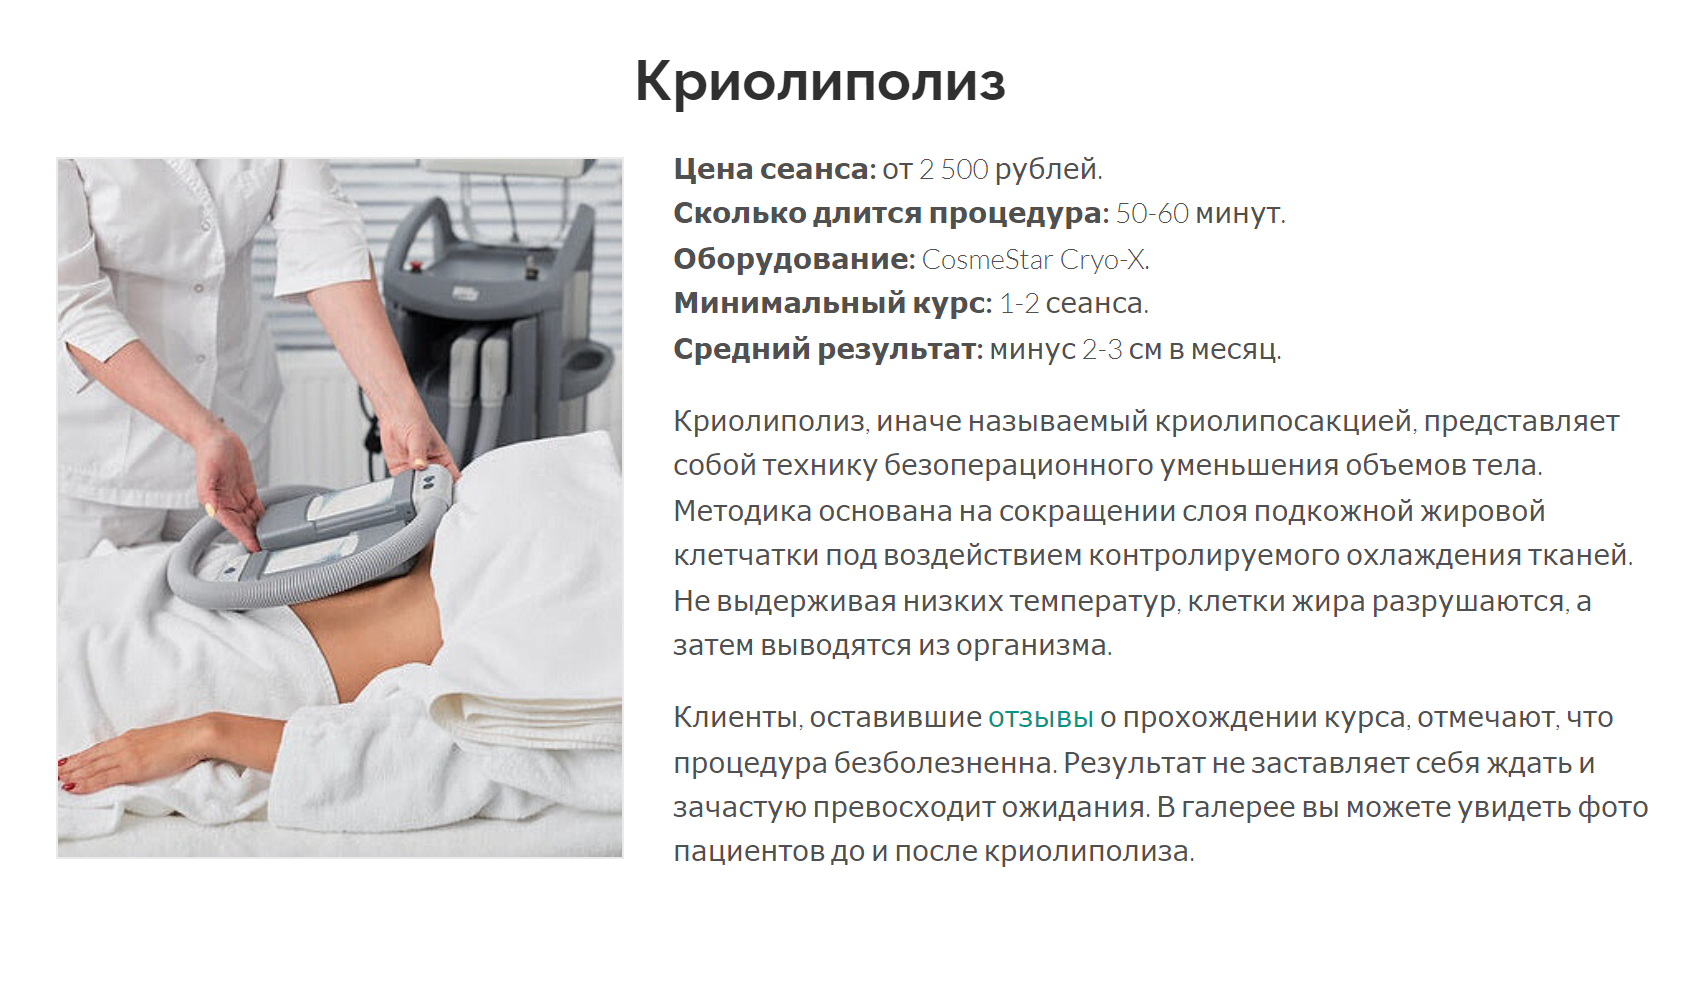 Клиники обещают, что криолиполиз сократит слой подкожной жировой клетчатки, но от целлюлита он точно не избавит. Источник: slimclinic.ru